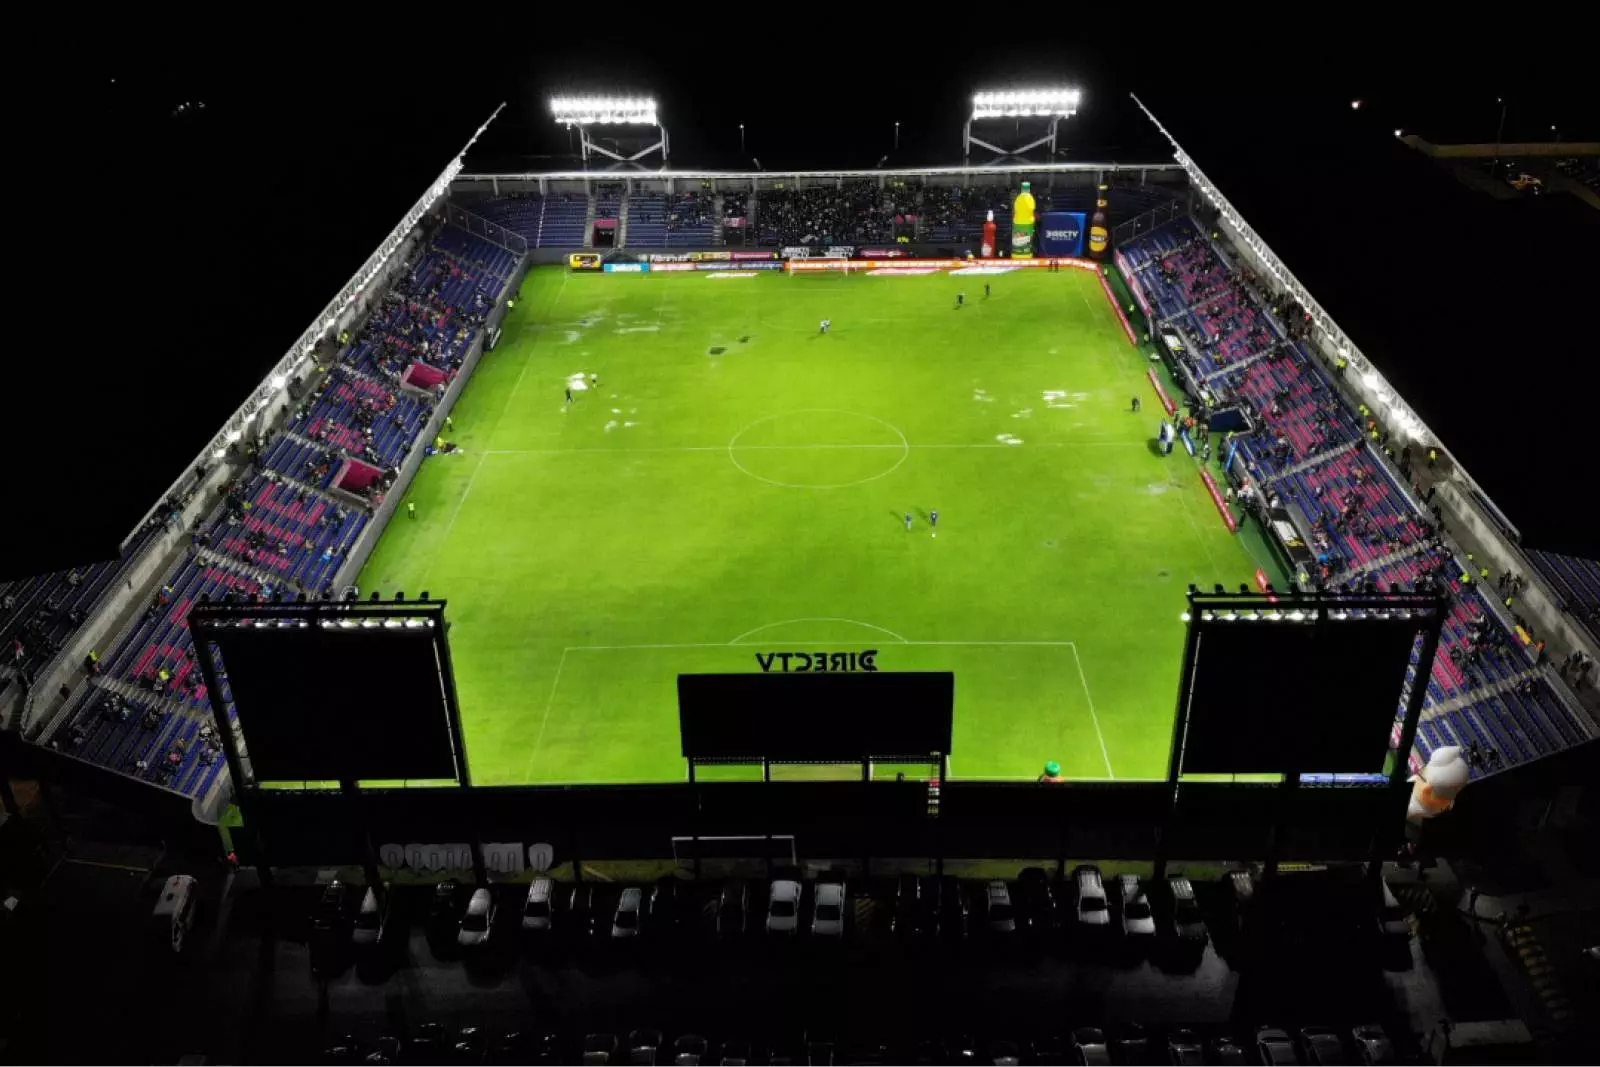 Stadium design for Estadio Banco Guayaquil